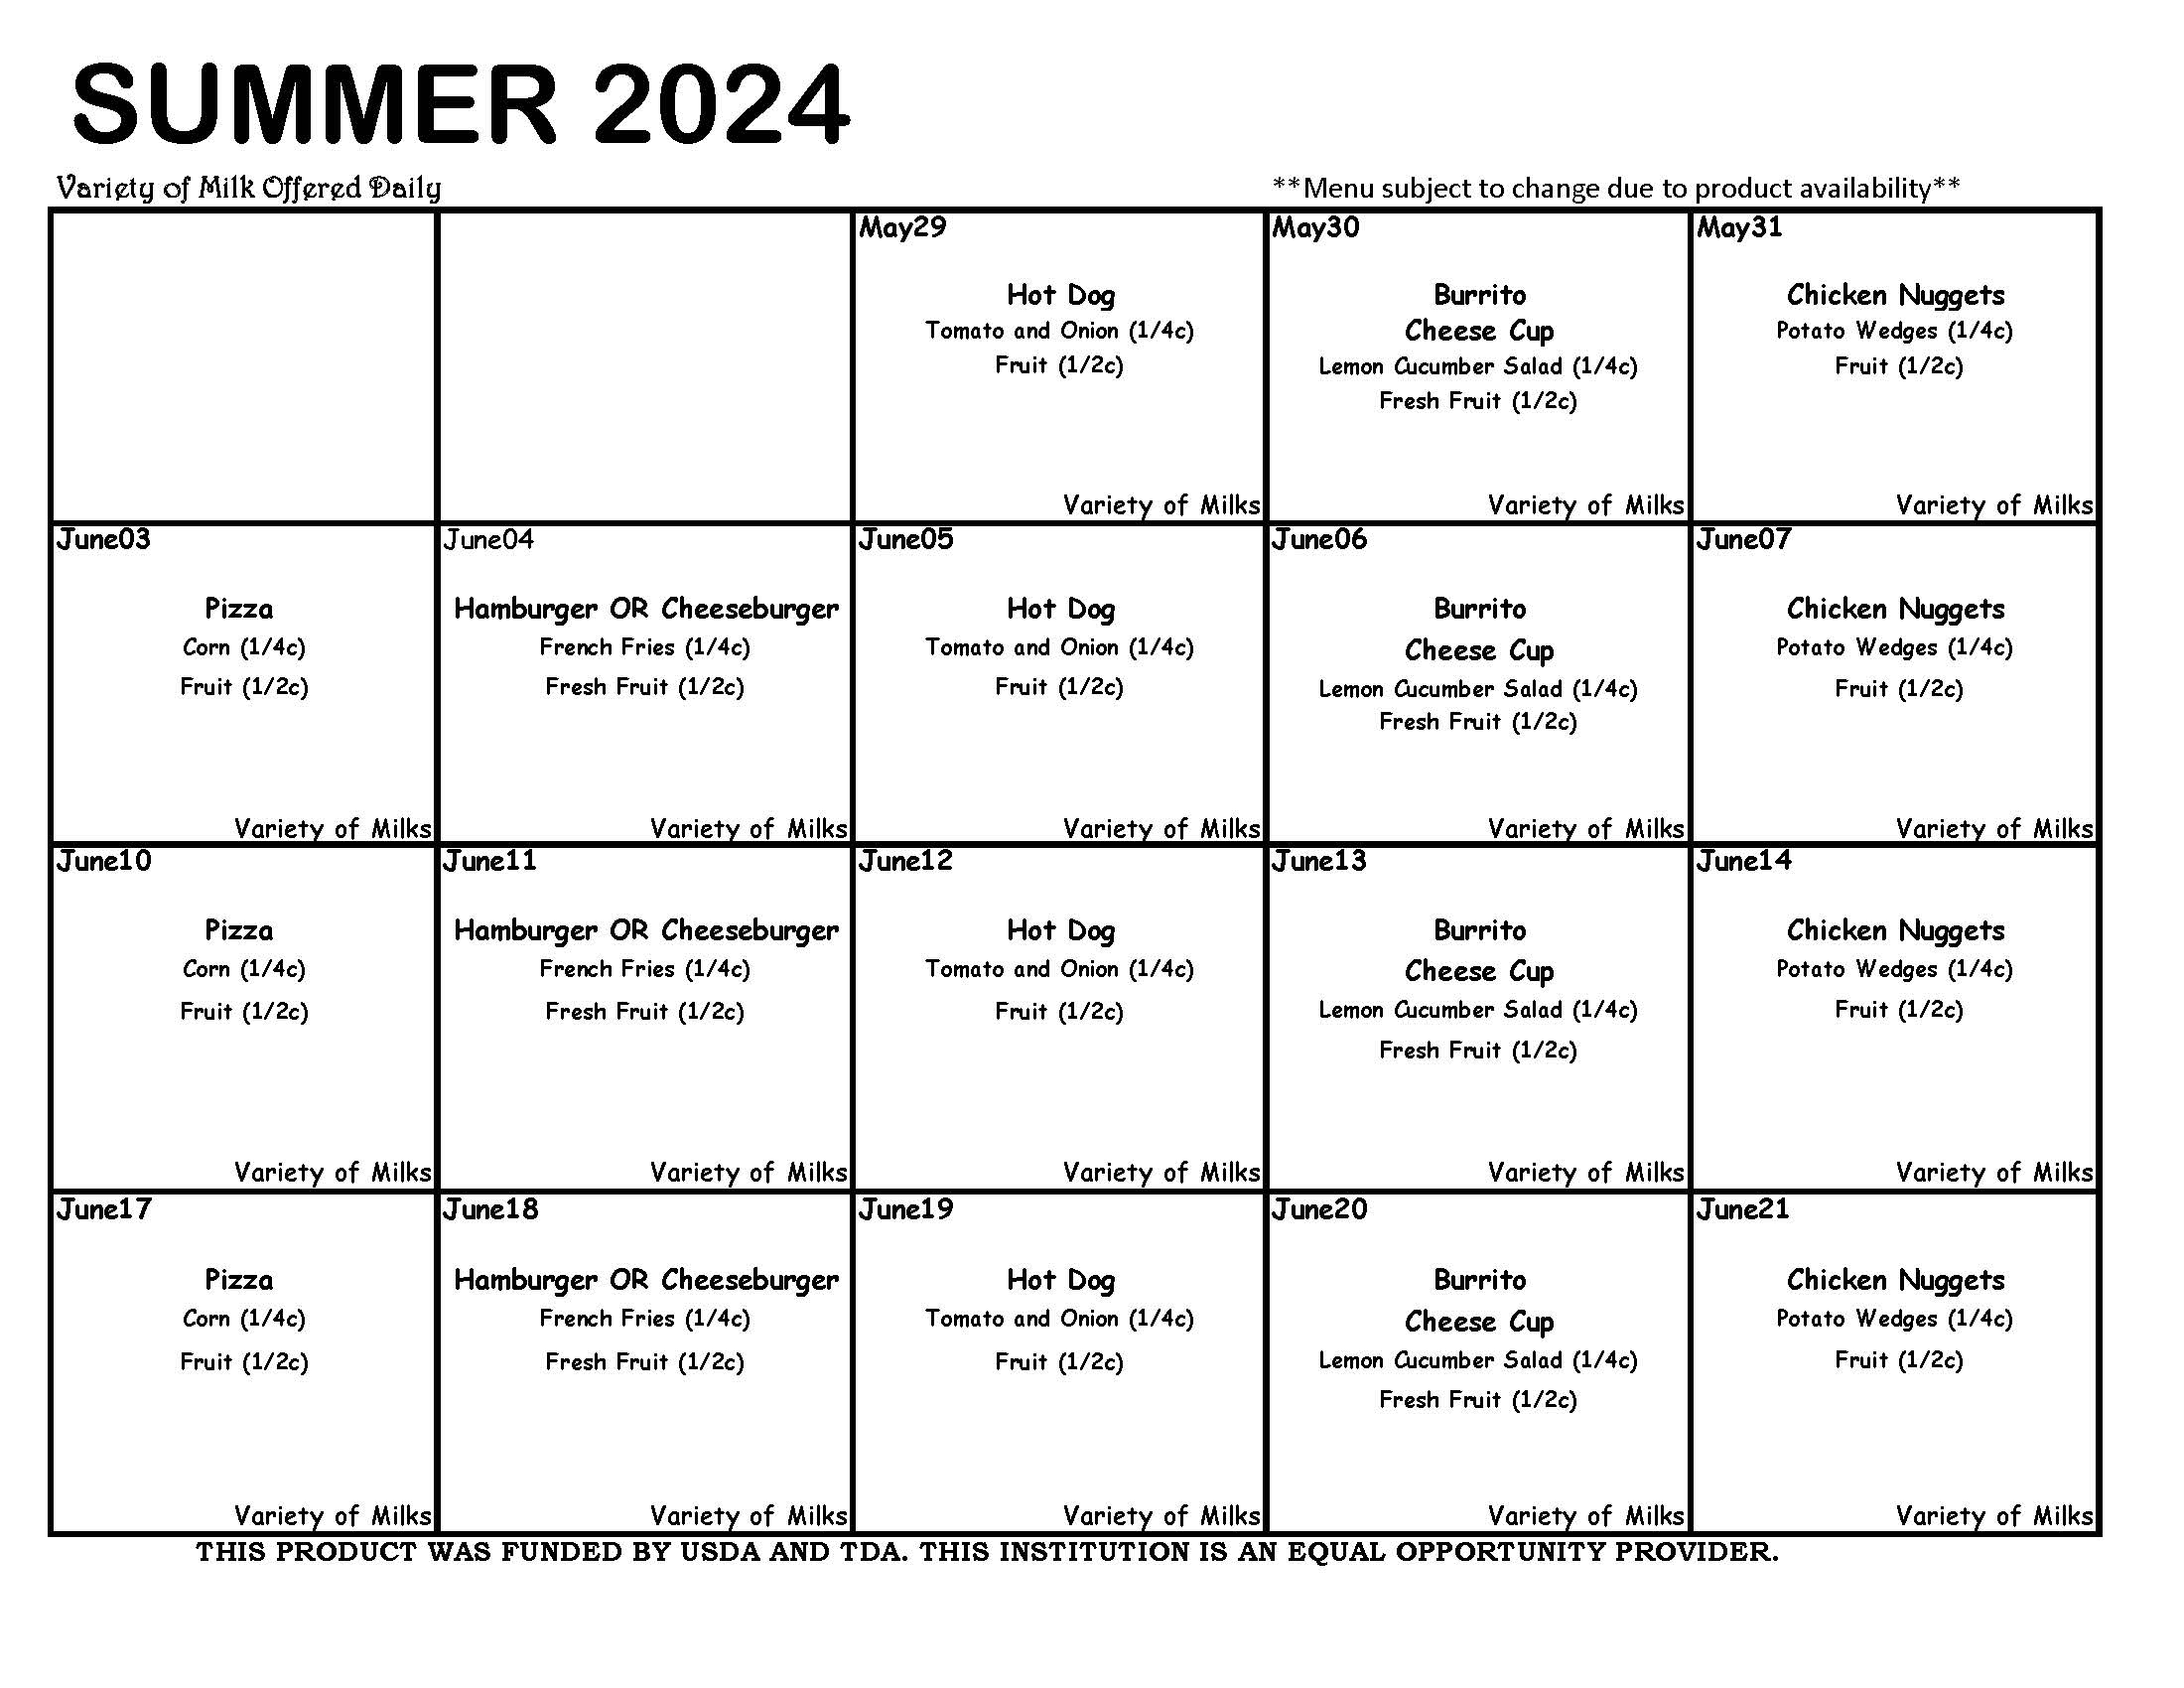 Summer 2024 menus